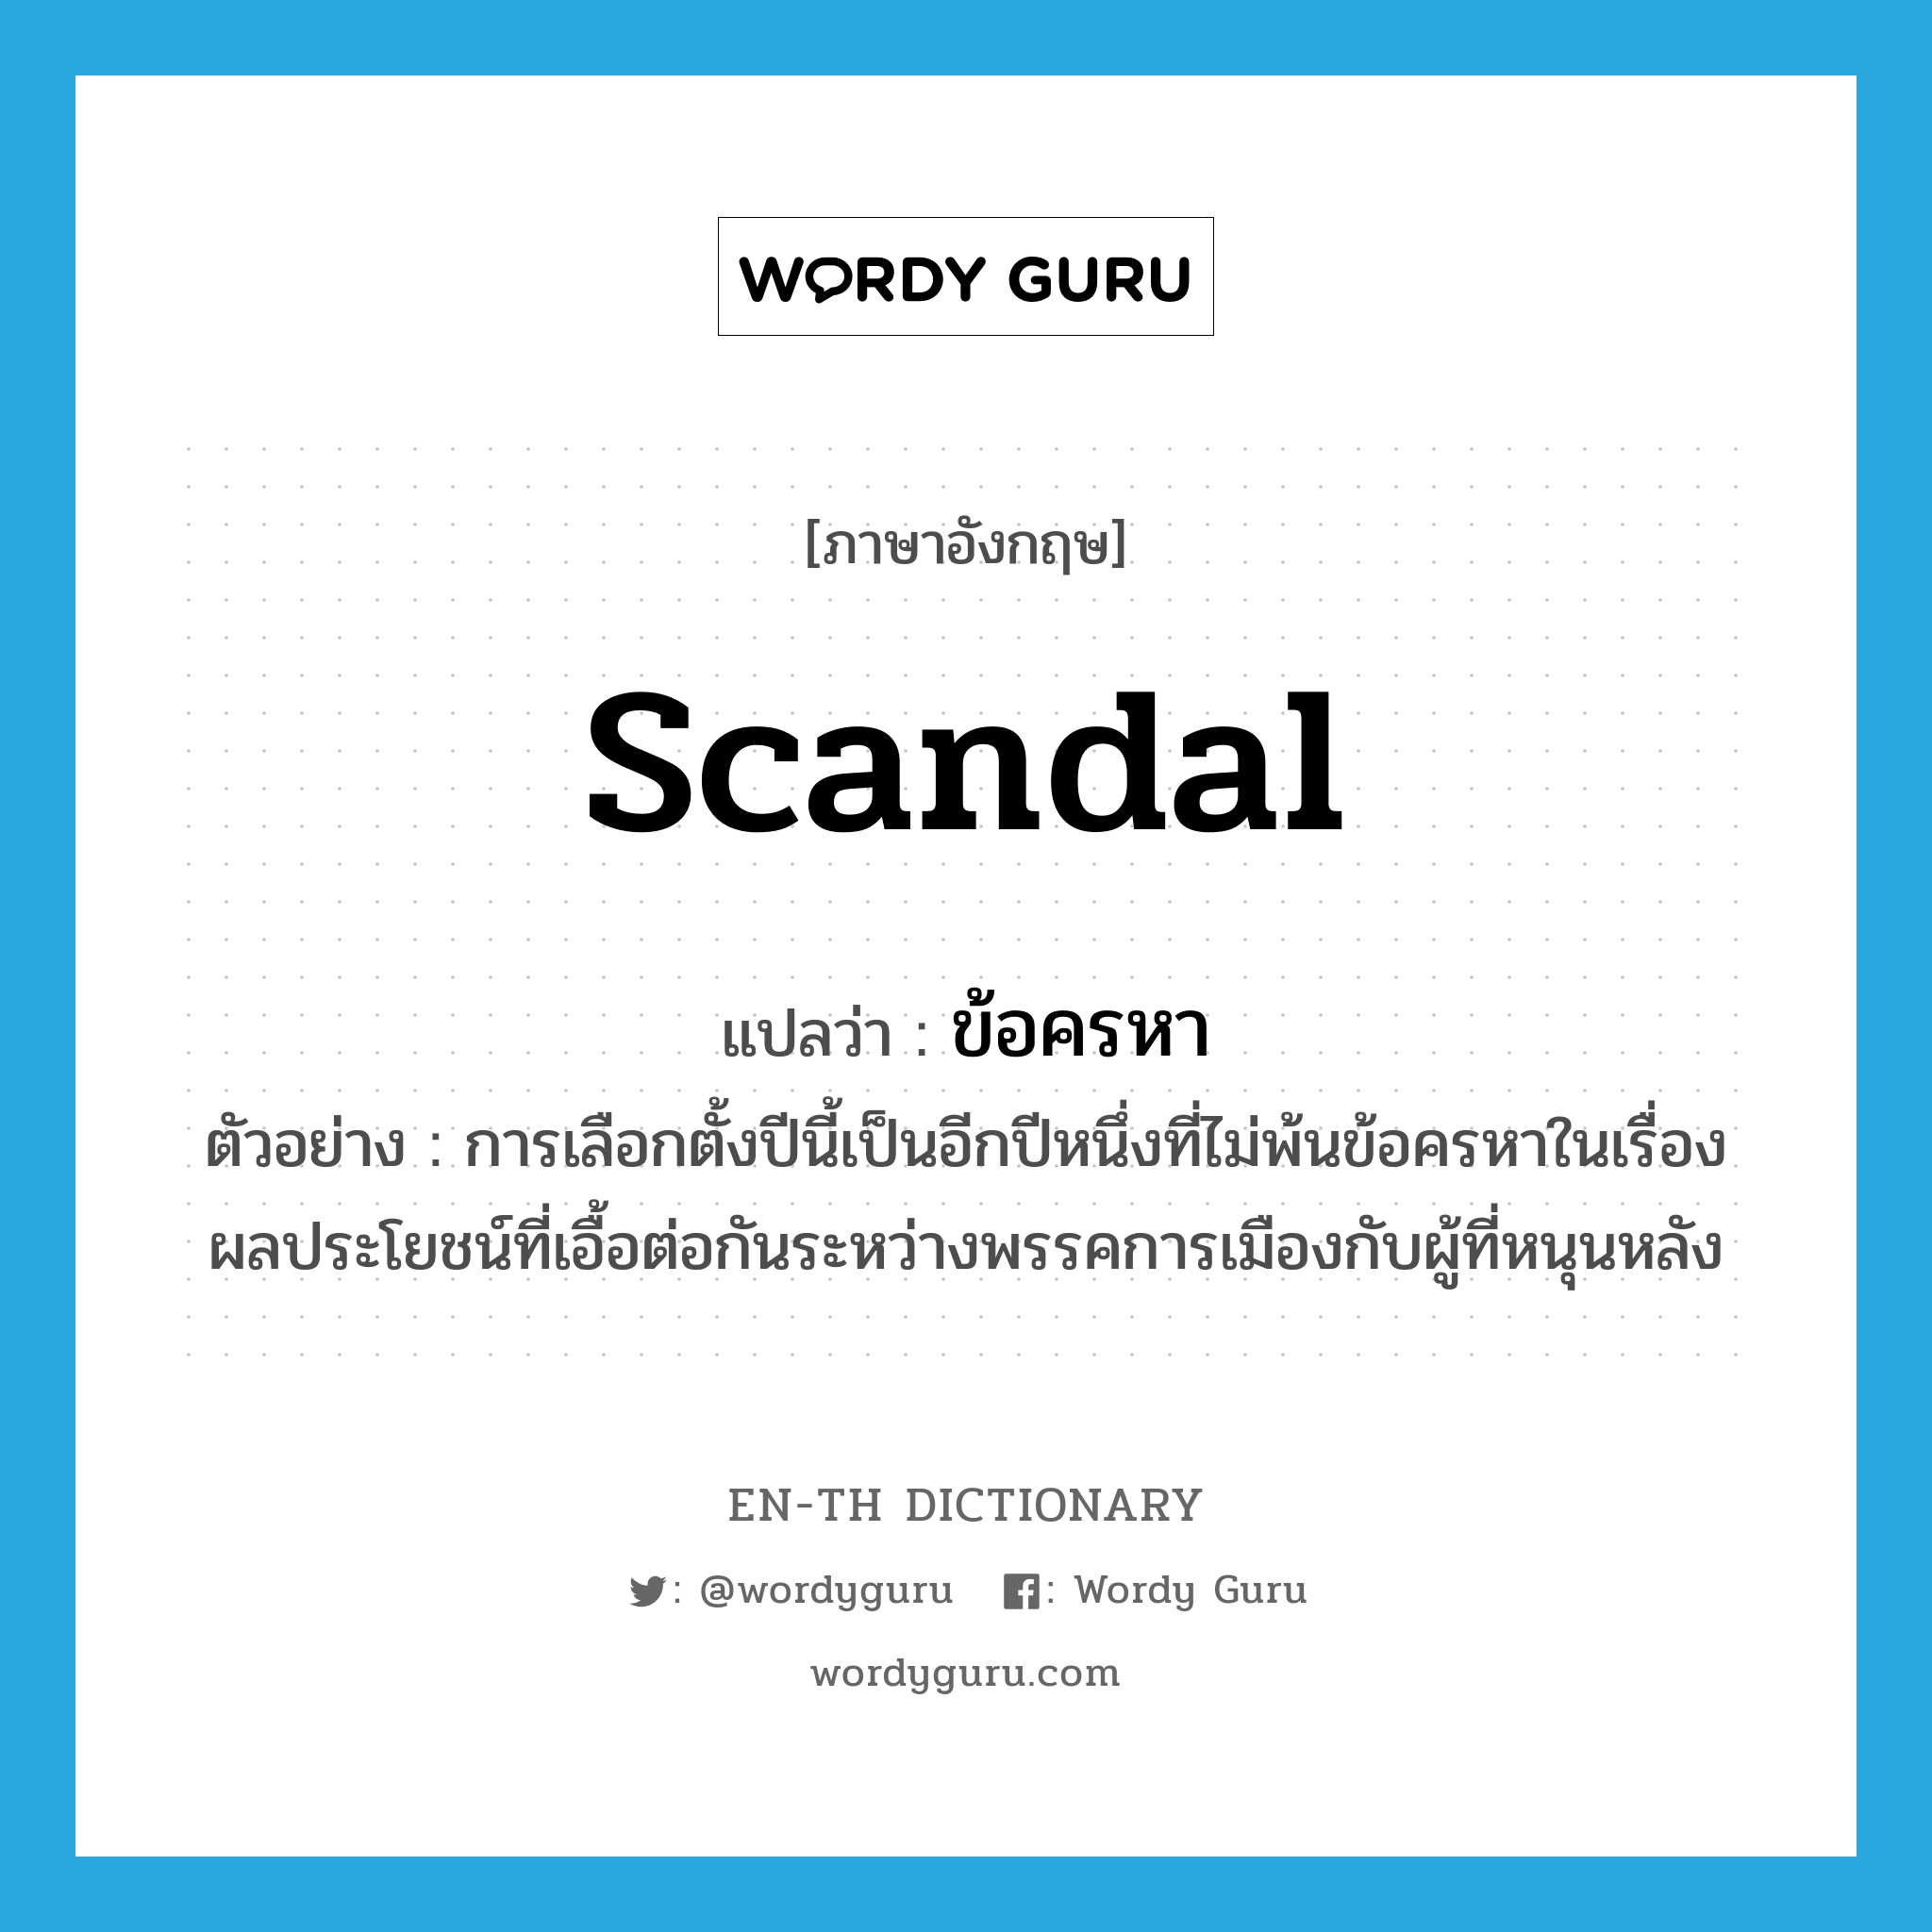 scandal แปลว่า?, คำศัพท์ภาษาอังกฤษ scandal แปลว่า ข้อครหา ประเภท N ตัวอย่าง การเลือกตั้งปีนี้เป็นอีกปีหนึ่งที่ไม่พ้นข้อครหาในเรื่องผลประโยชน์ที่เอื้อต่อกันระหว่างพรรคการเมืองกับผู้ที่หนุนหลัง หมวด N